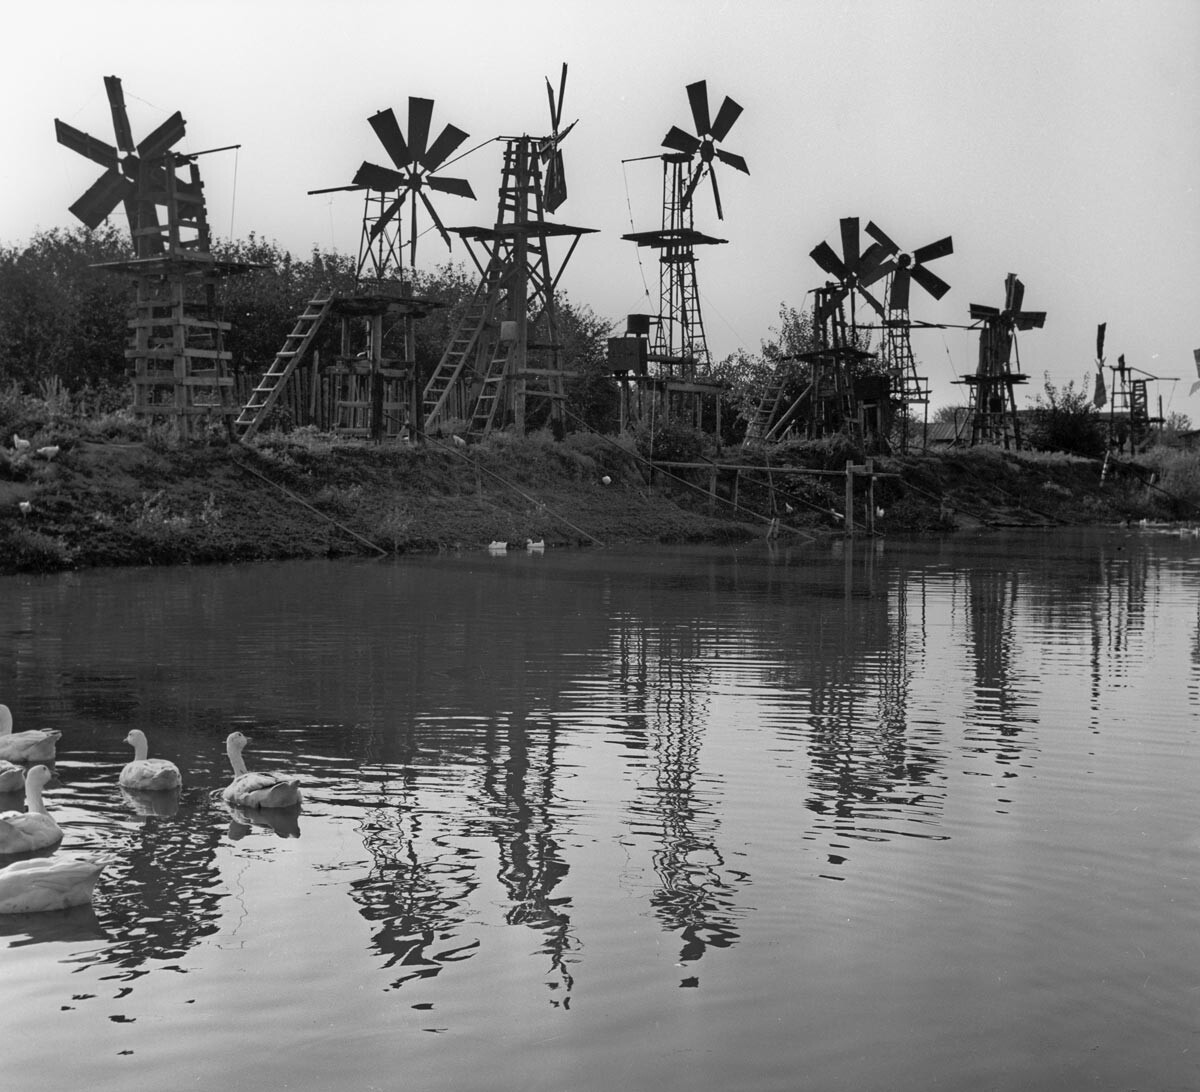 Astrachan. Eine Windkraftanlage am Ufer eines Sees, der bewässertes Ackerland mit Wasser versorgt, 1969.